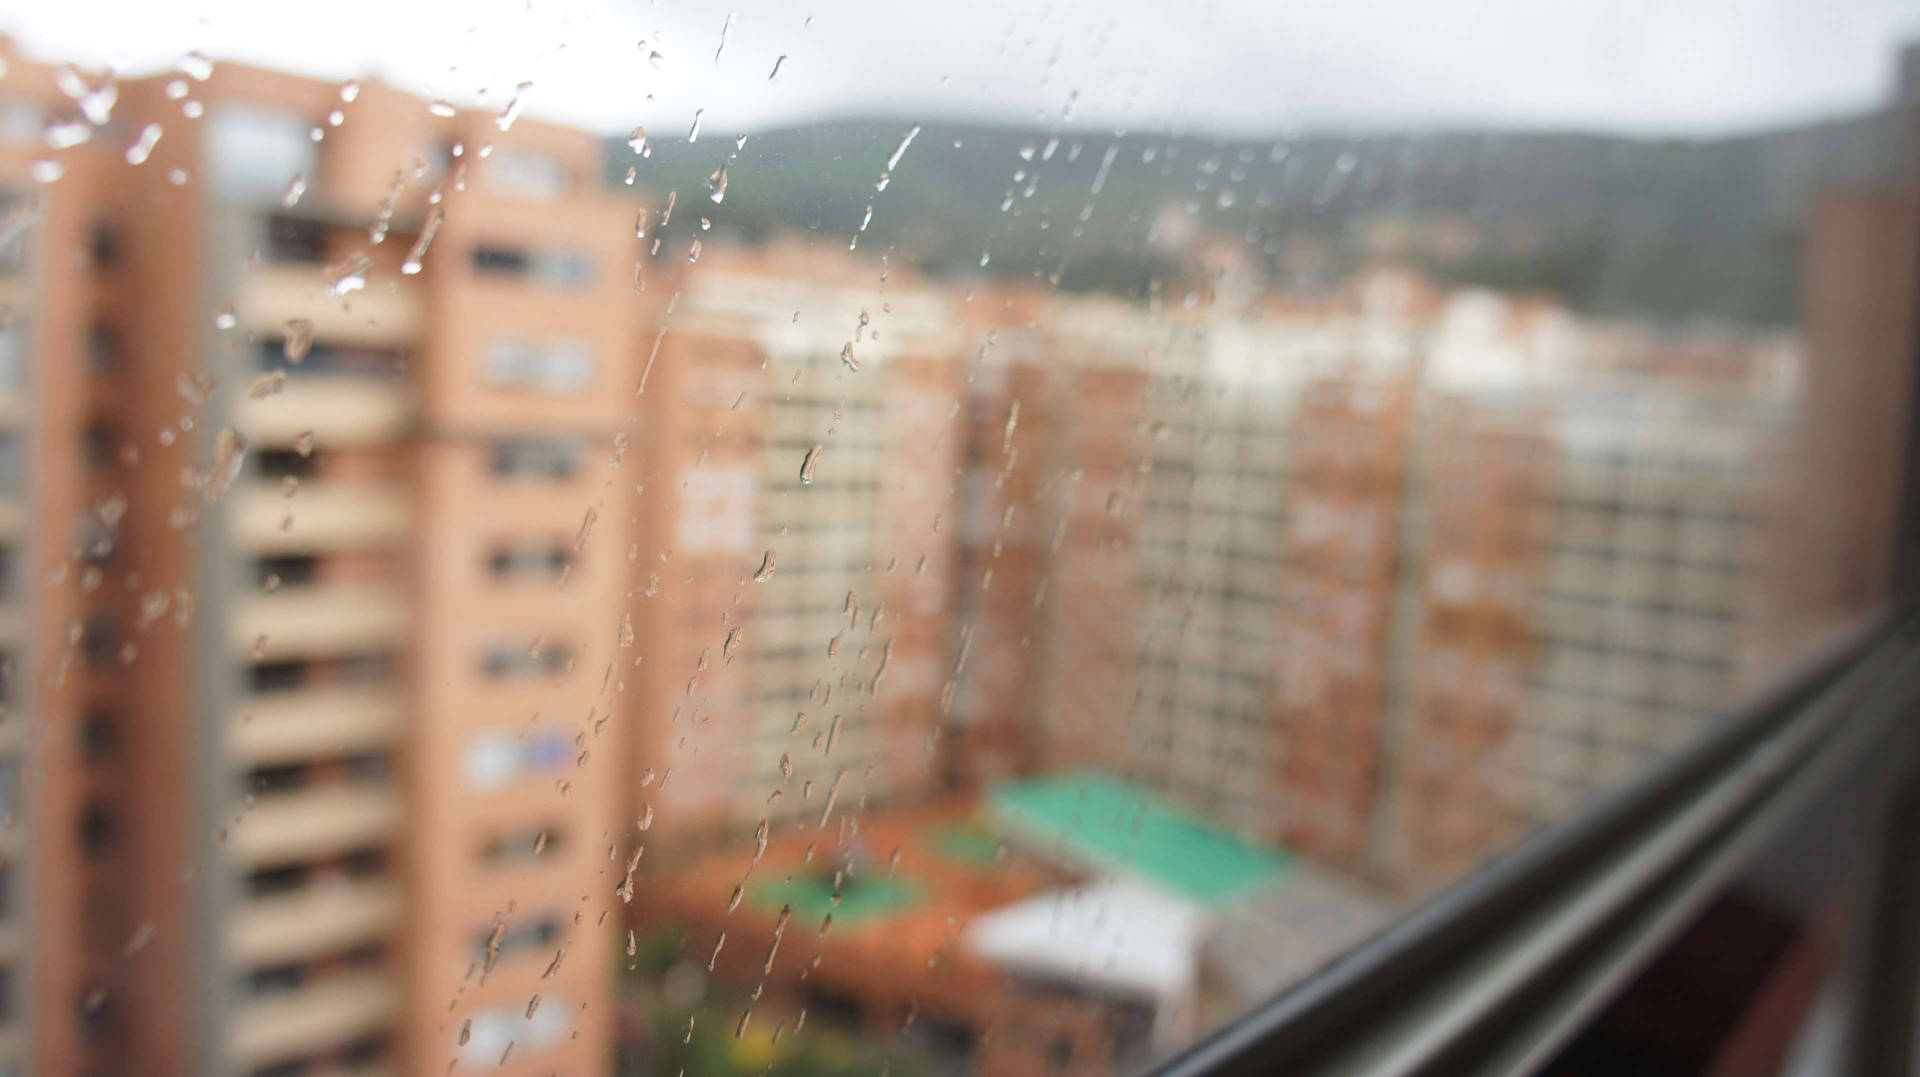 Bogota In A Blurred View